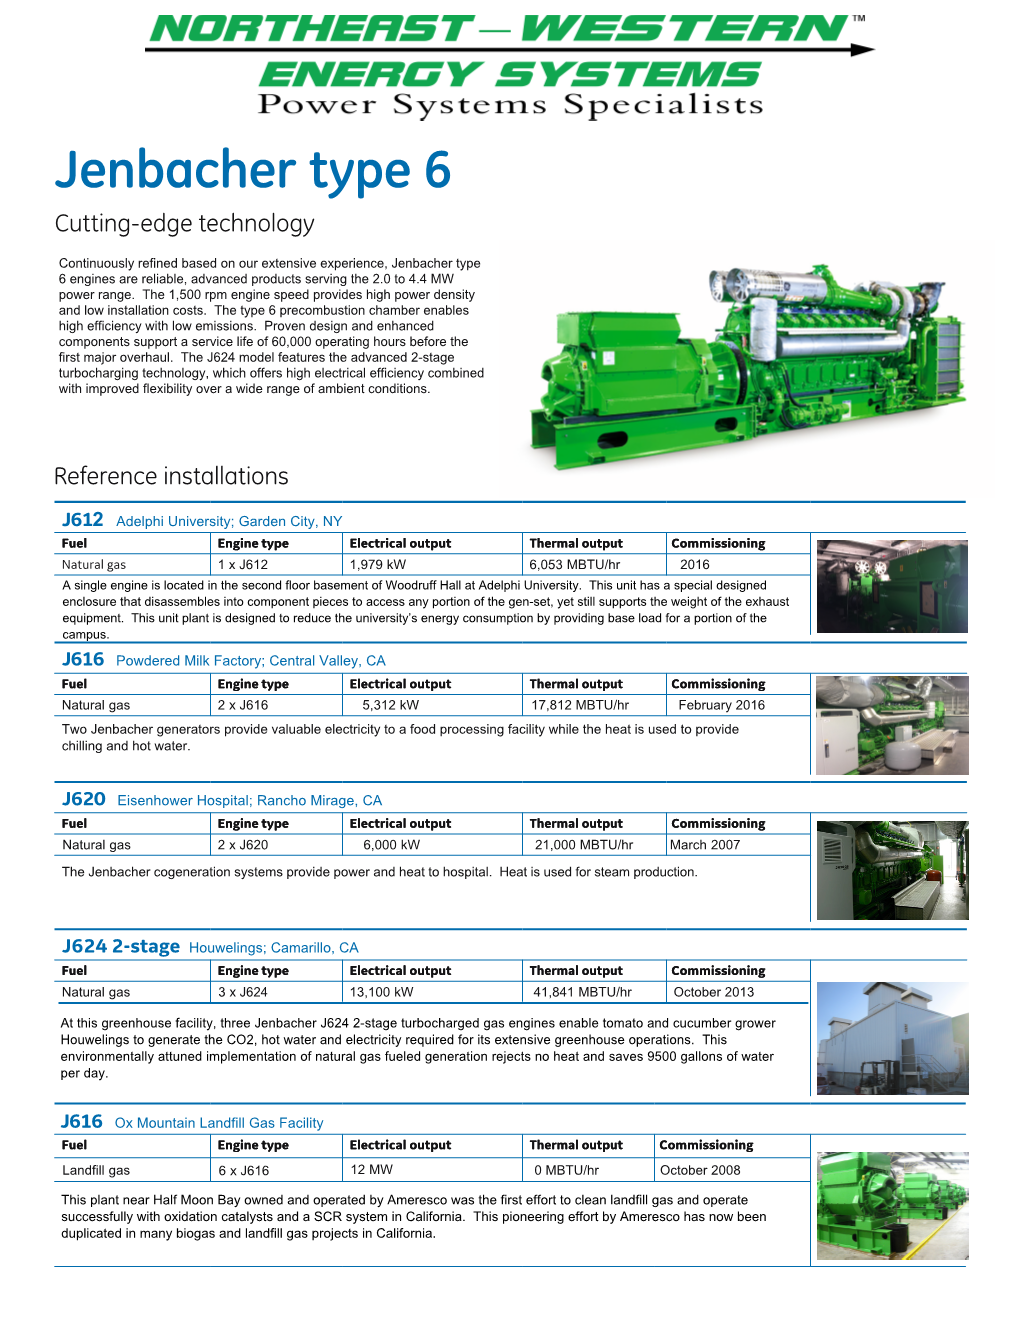 Jenbacher Type 6 Fact Sheet